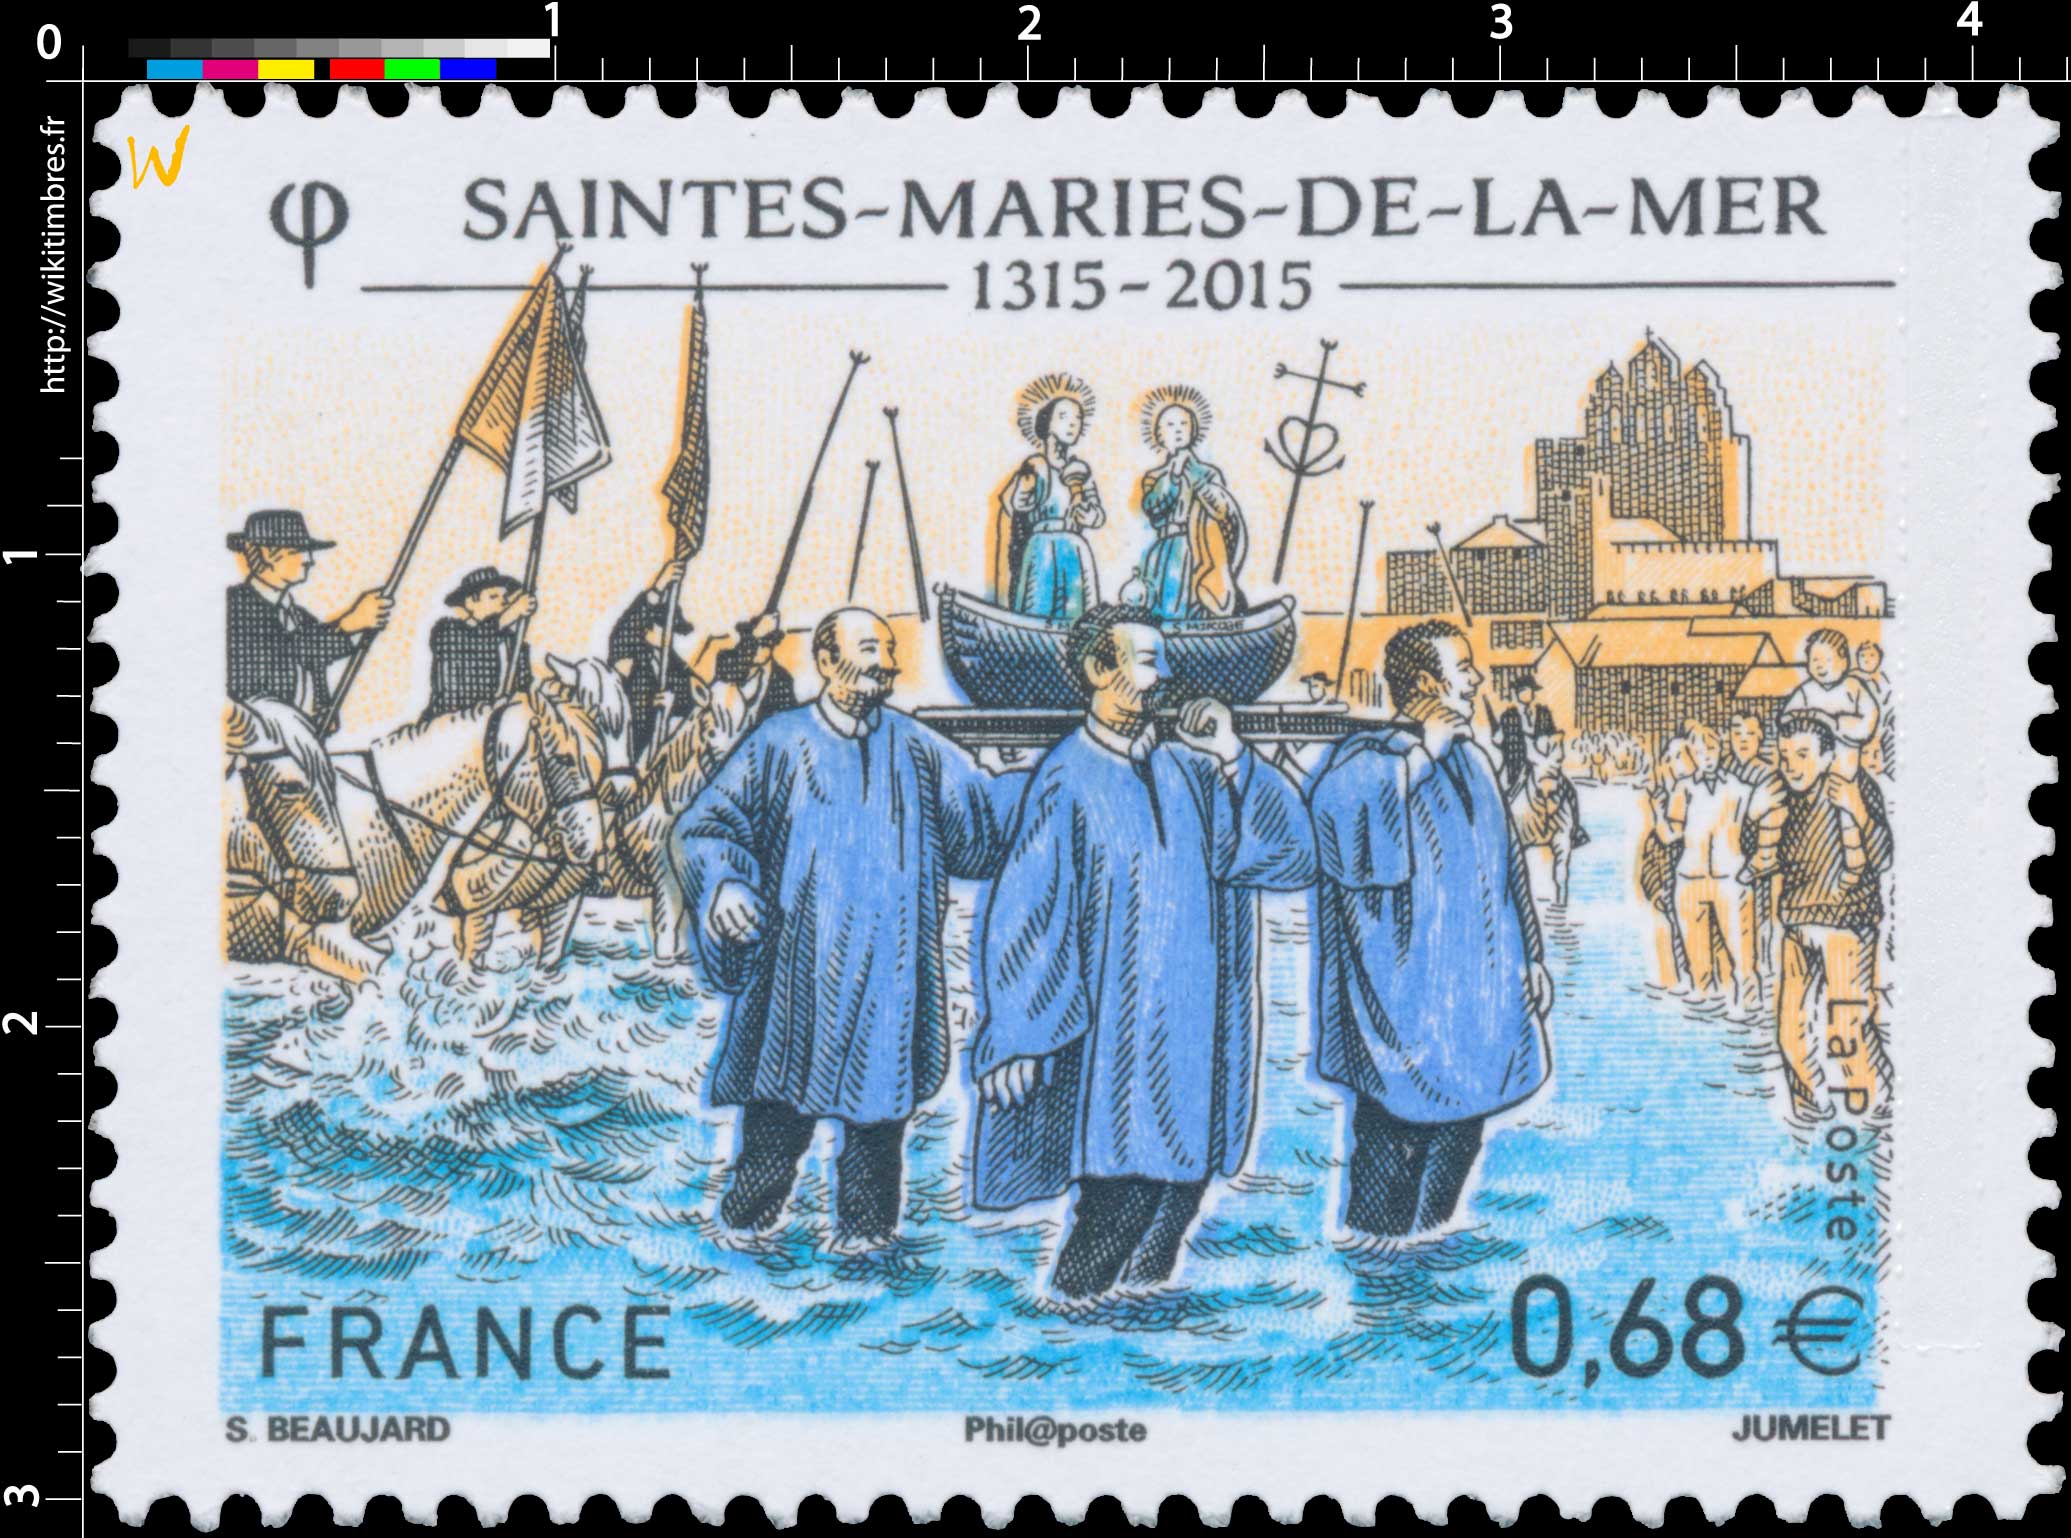 2015 SAINTES-MARIES-DE-LA-MER 1315-2015